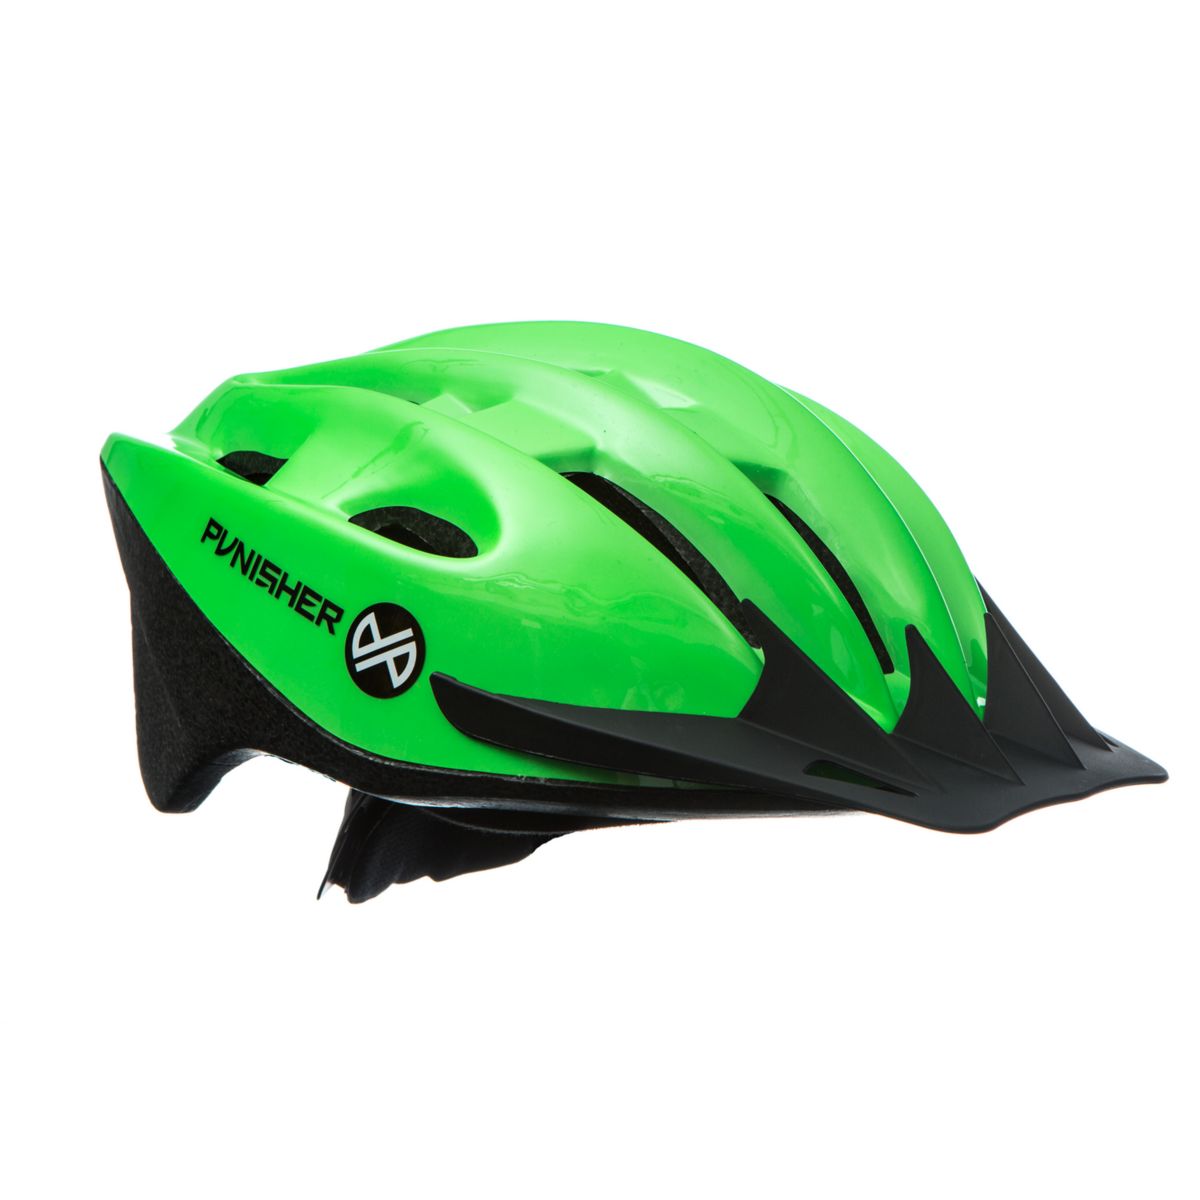 Неоново-зеленый велосипедный шлем для взрослых Punisher Punisher